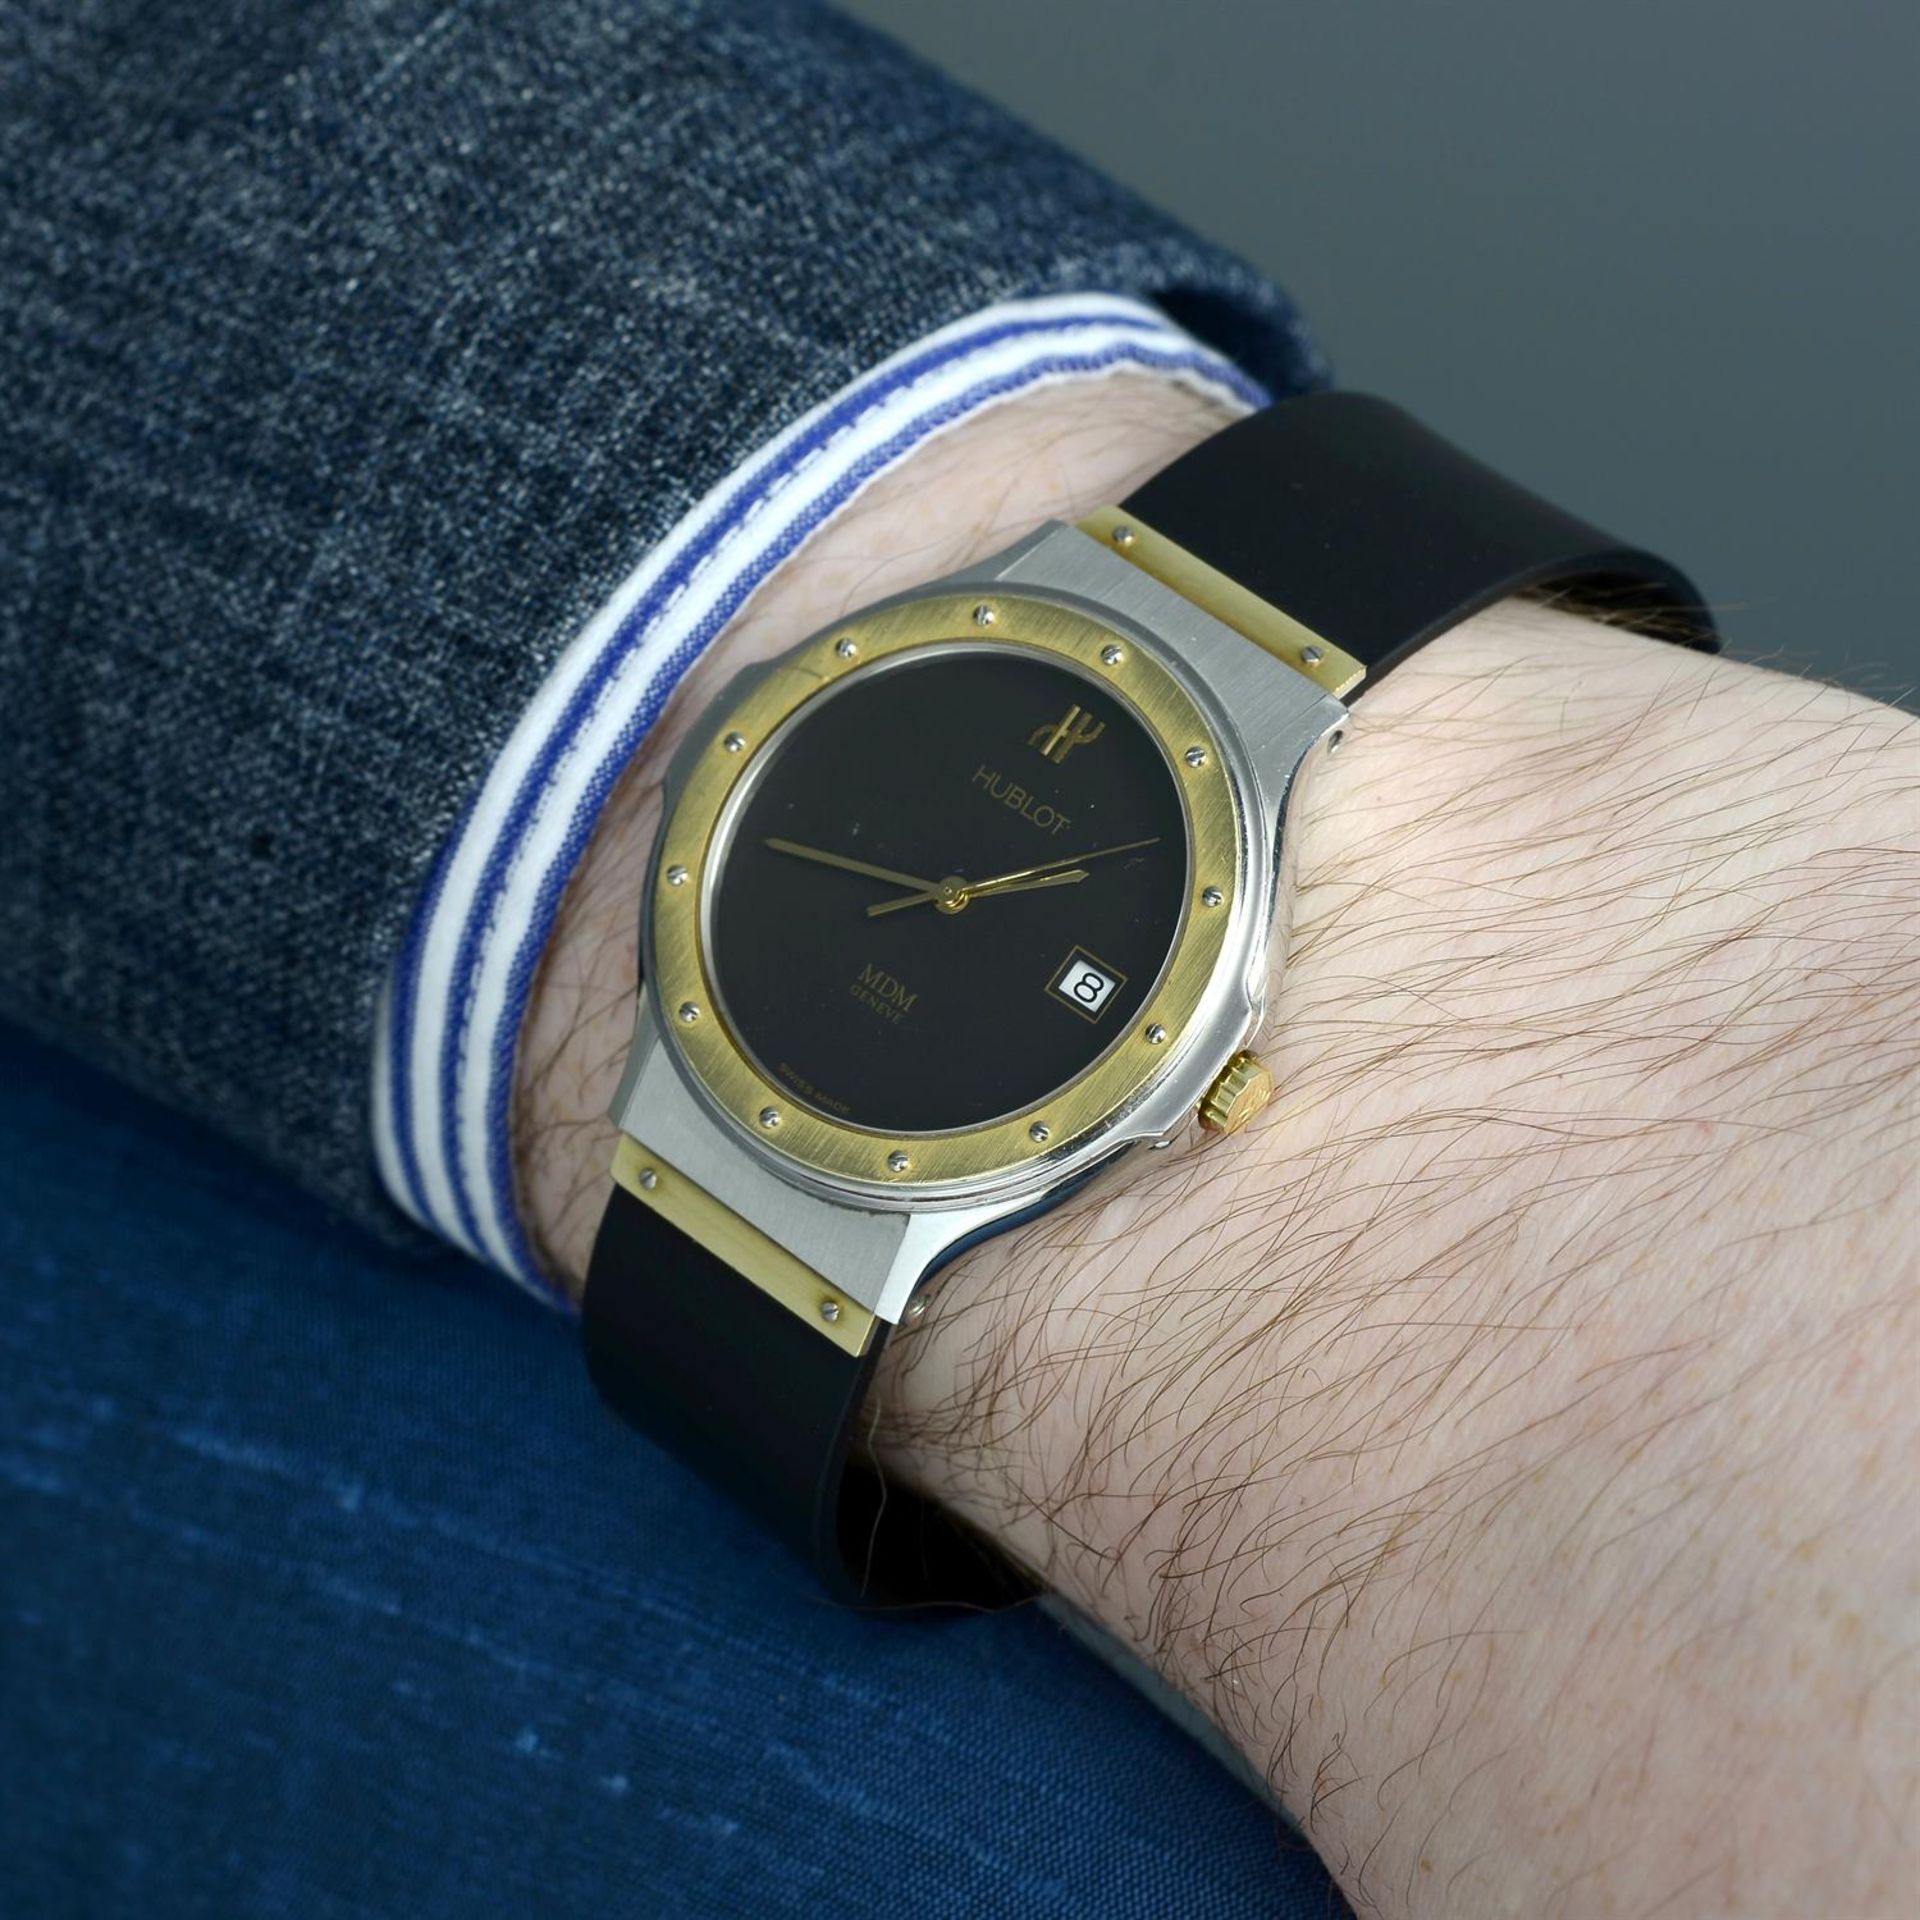 HUBLOT - a bi-metal MDM wrist watch, 36mm. - Image 5 of 5